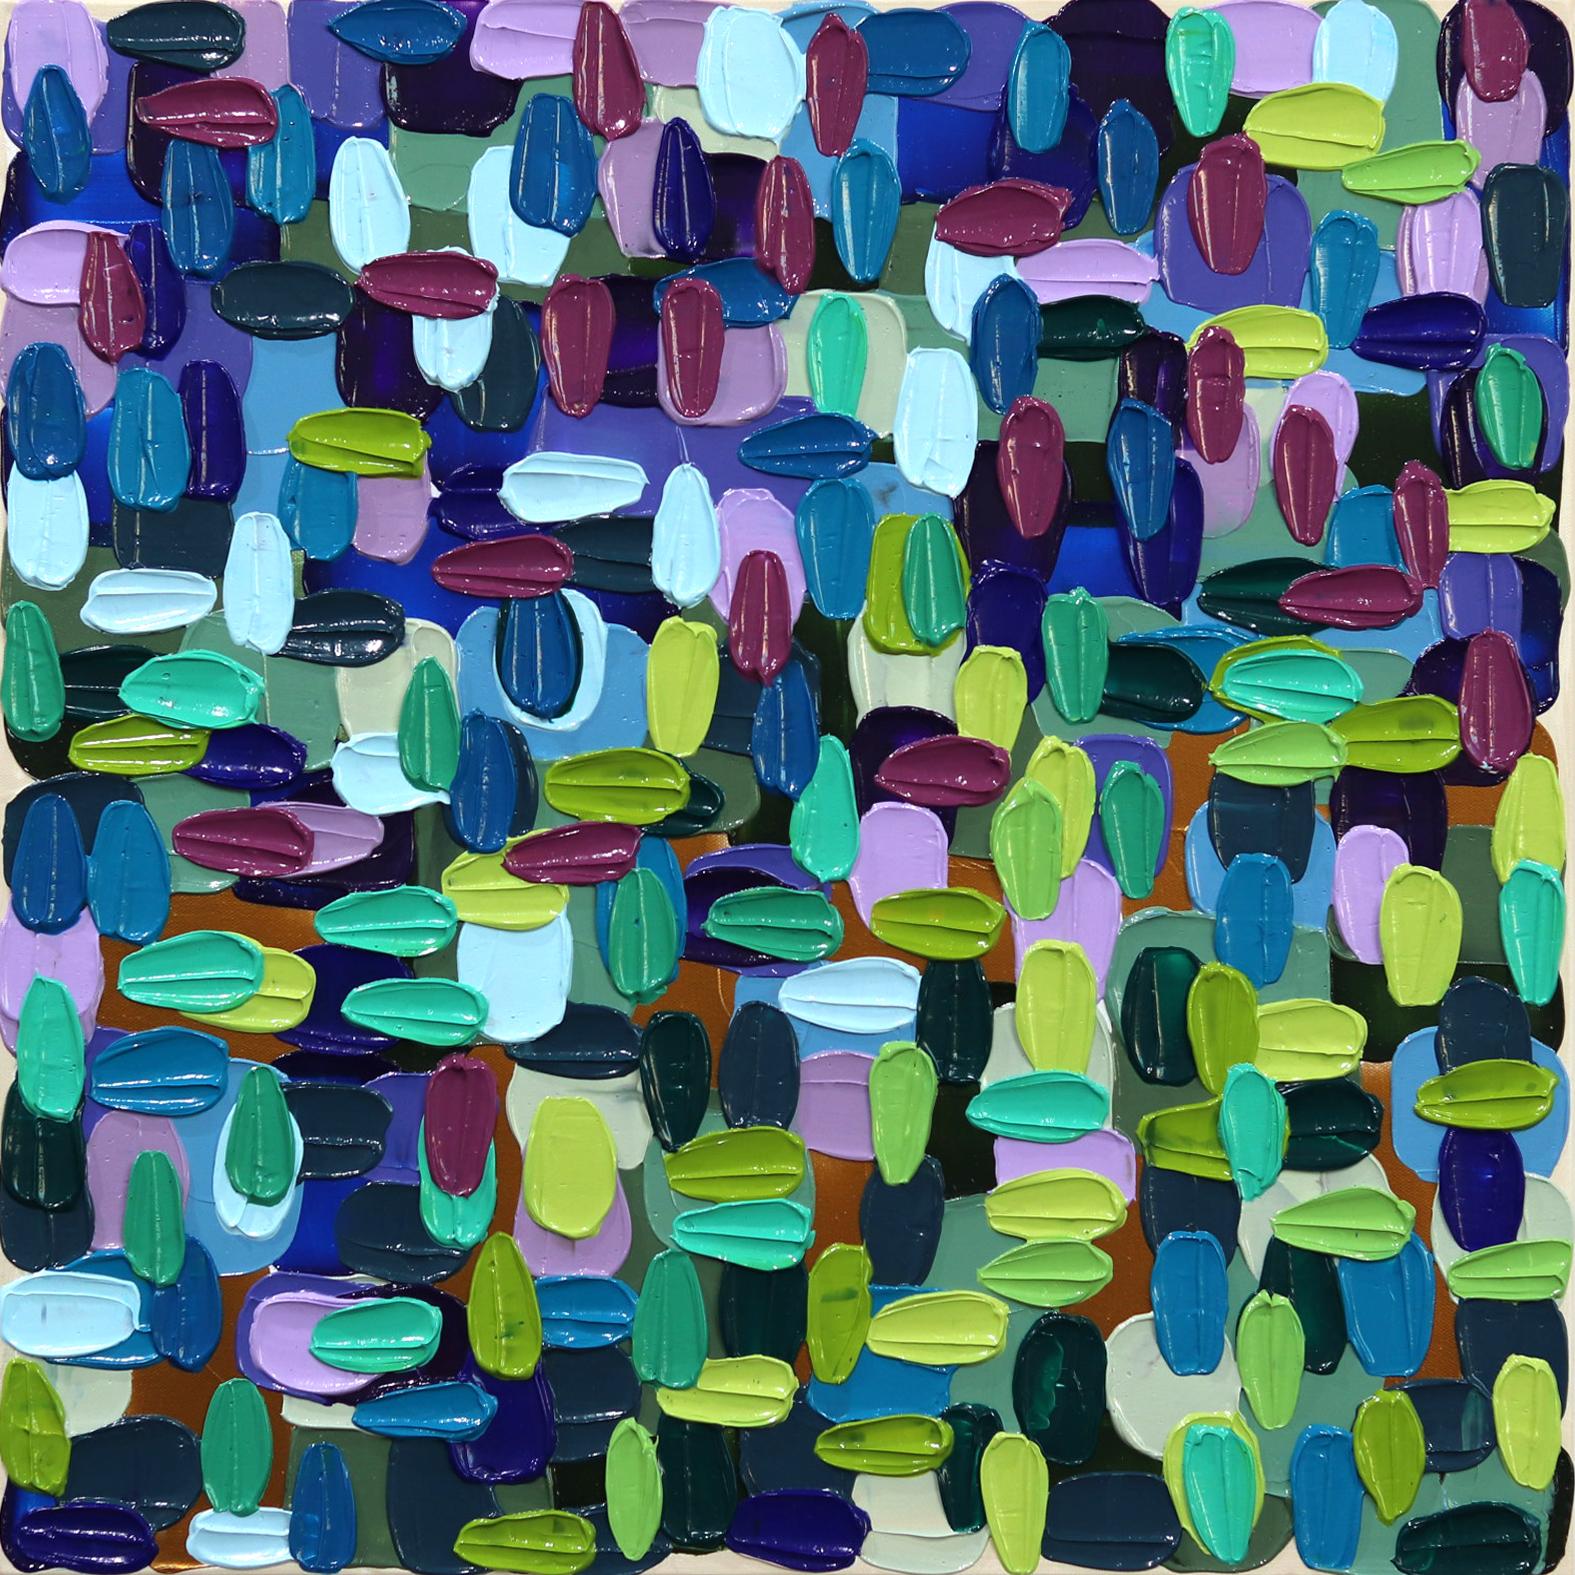 Abstract Painting Shiri Phillips - "Water Lily" - Peinture épaisse et abstraite colorée